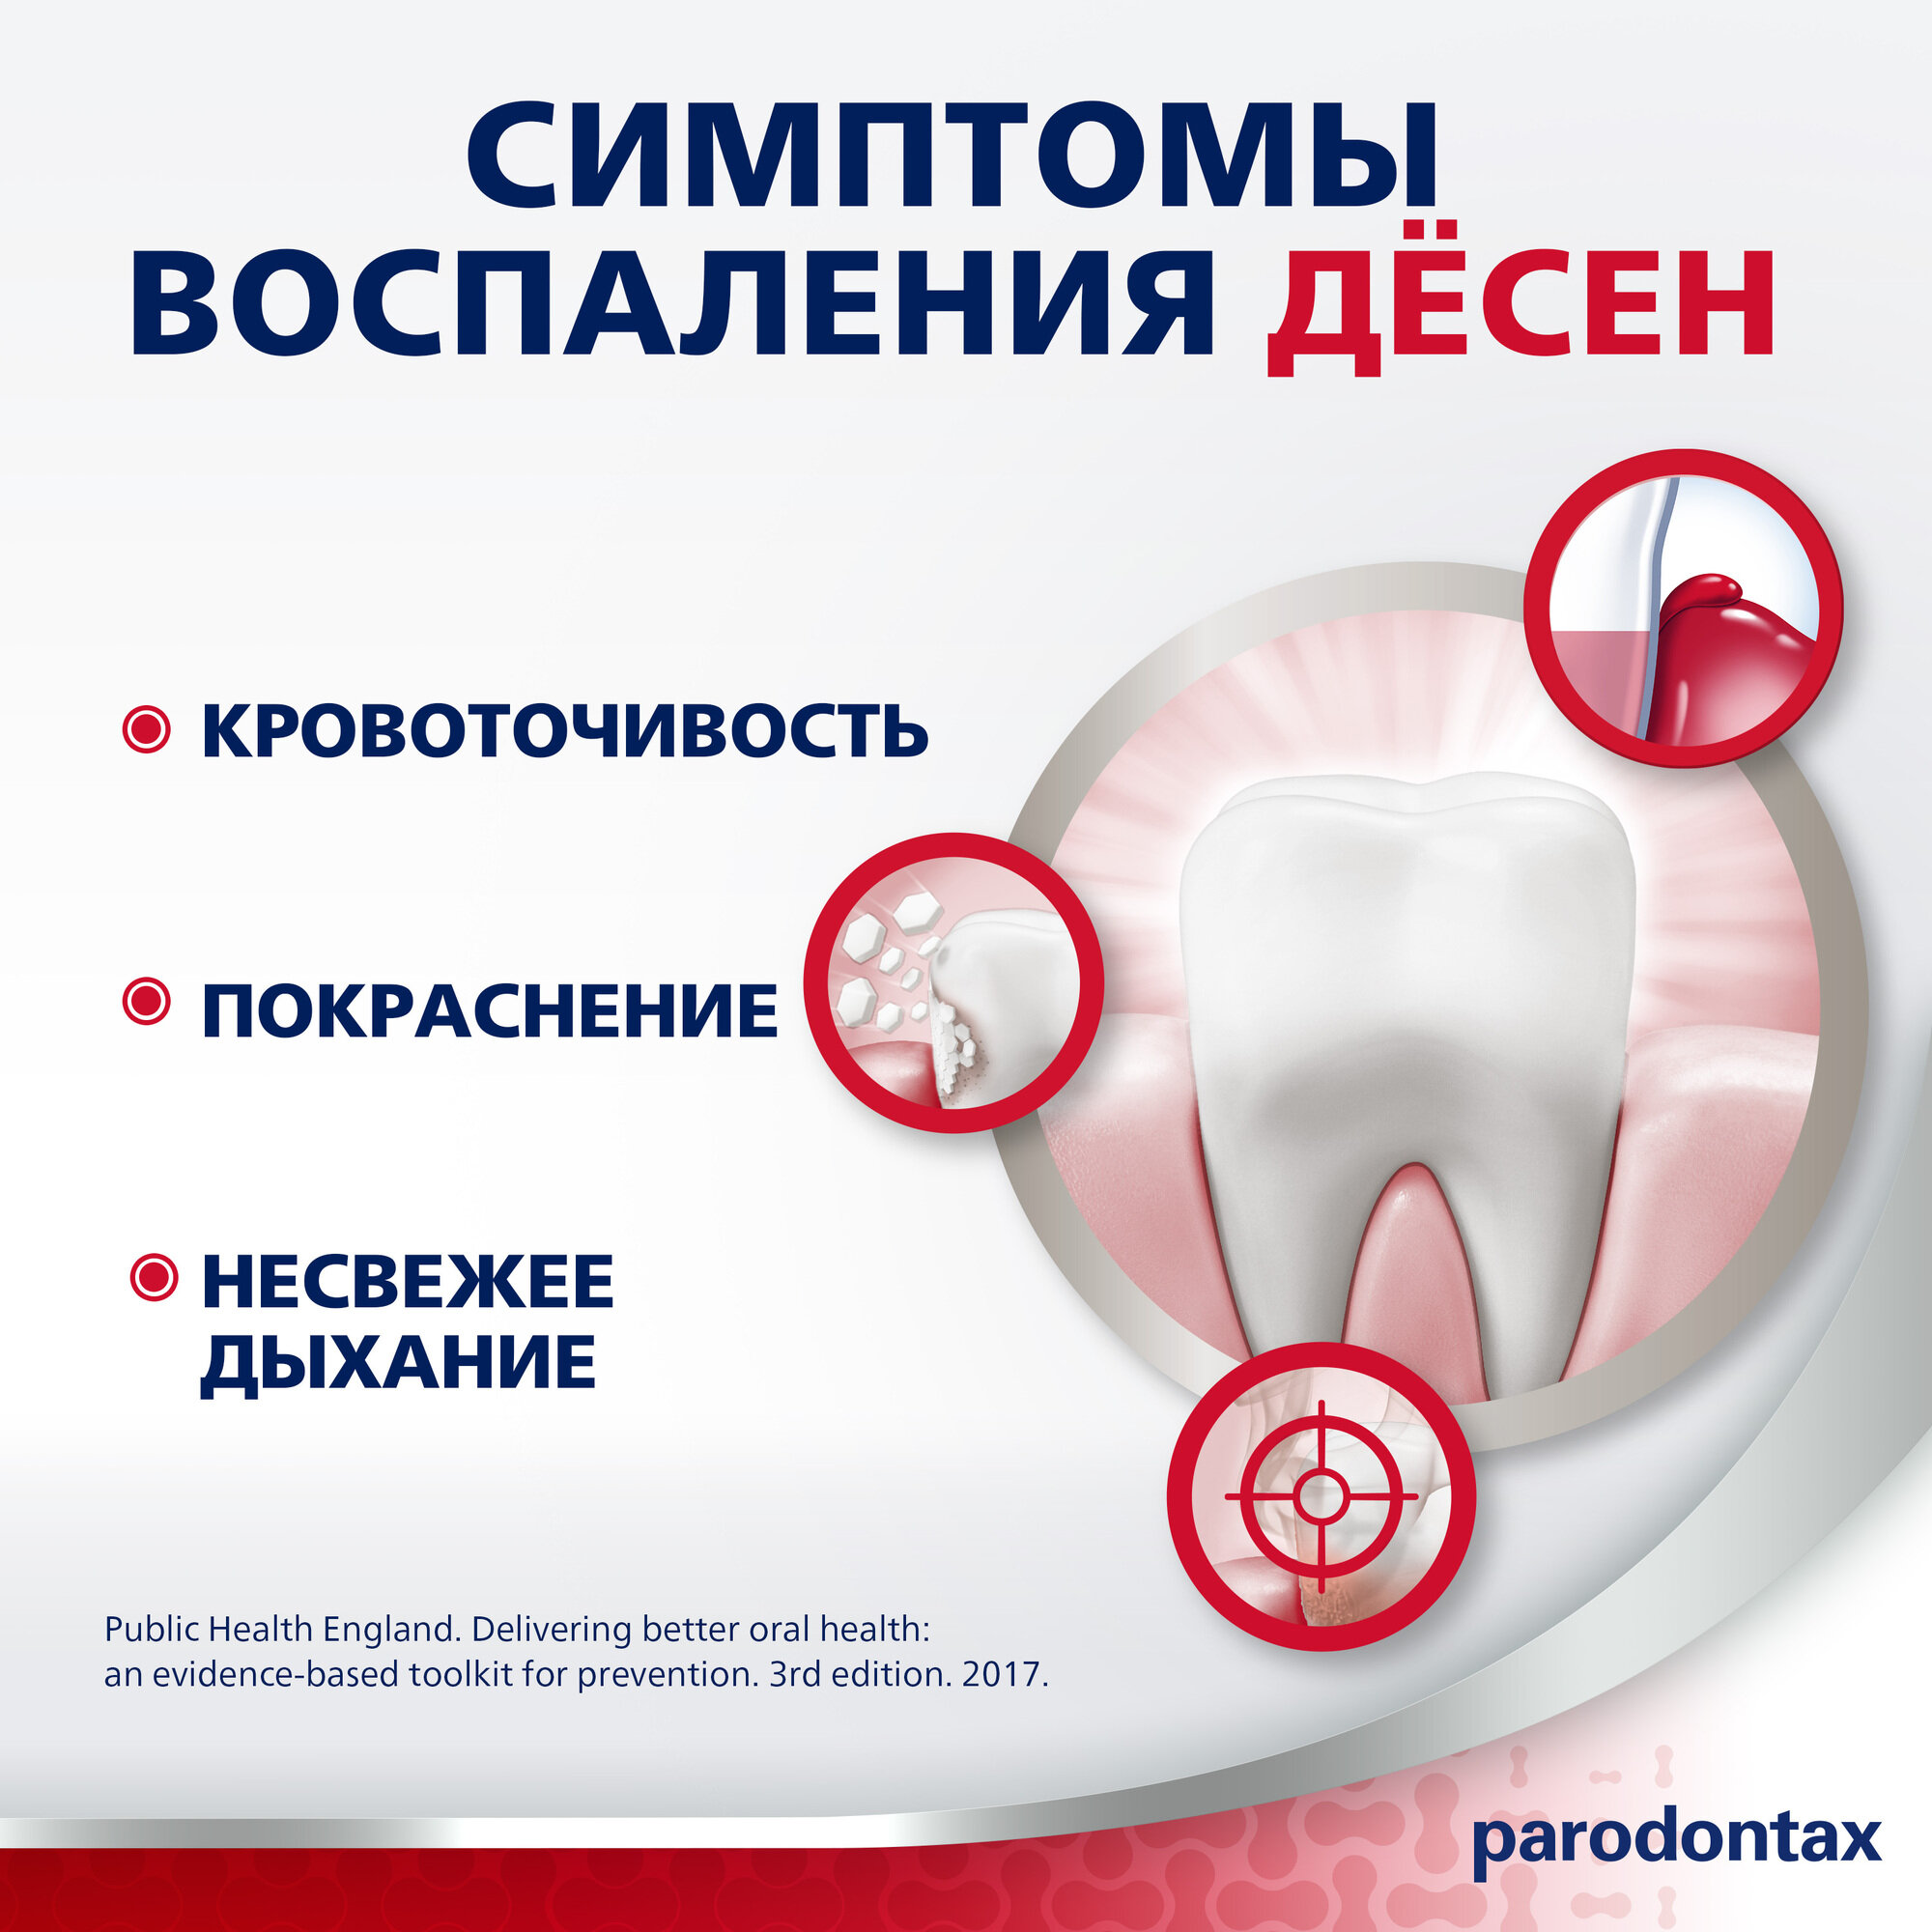 Зубная паста parodontax с Фтором от воспаления и кровоточивости десен для поддержания здоровья десен и укрепления зубов, 75 мл